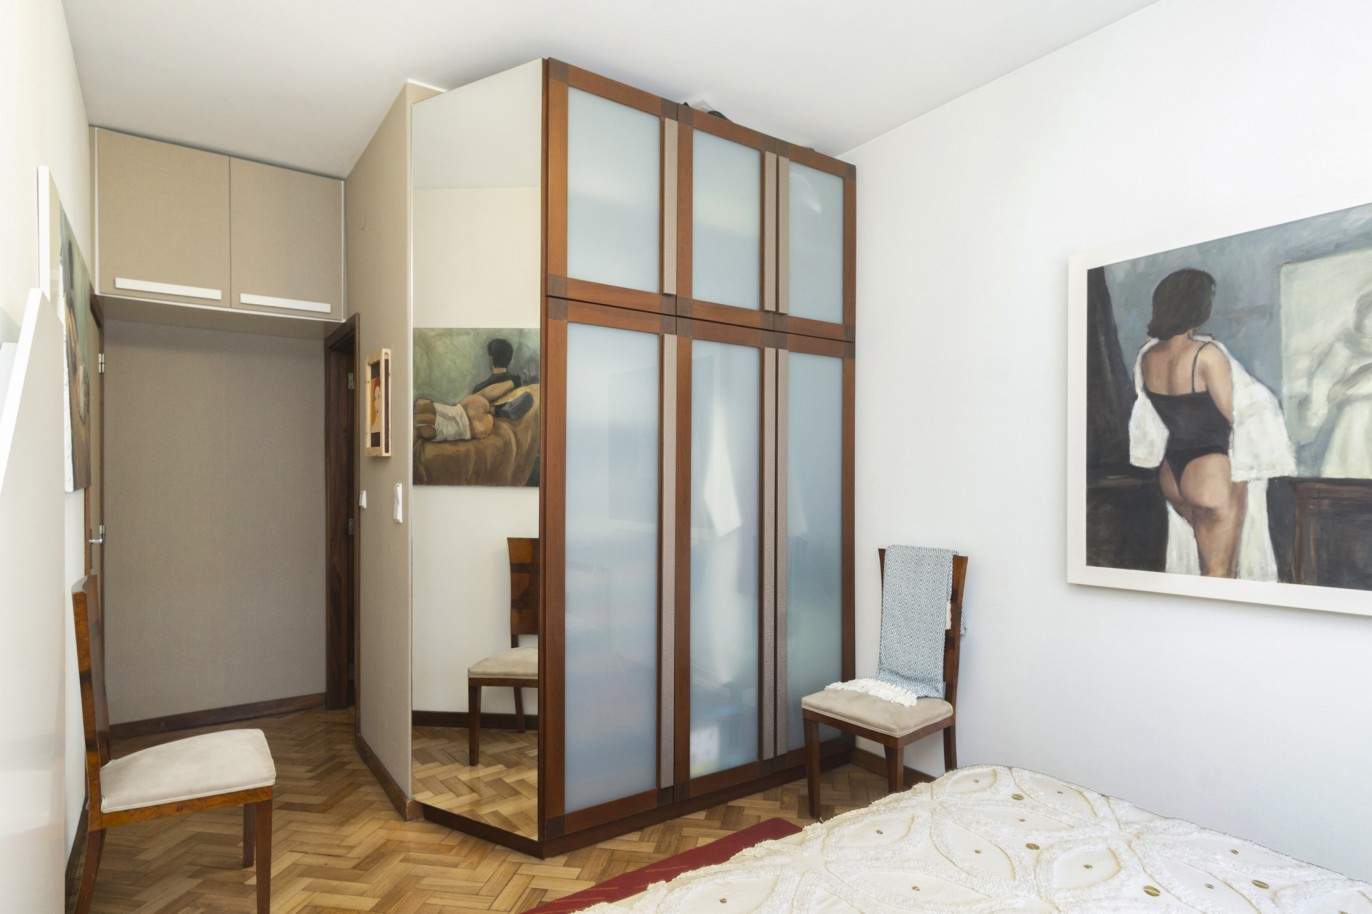 3-Zimmer-Wohnung, zu verkaufen, in der Nähe der Universität Pole, Porto, Portugal_212449